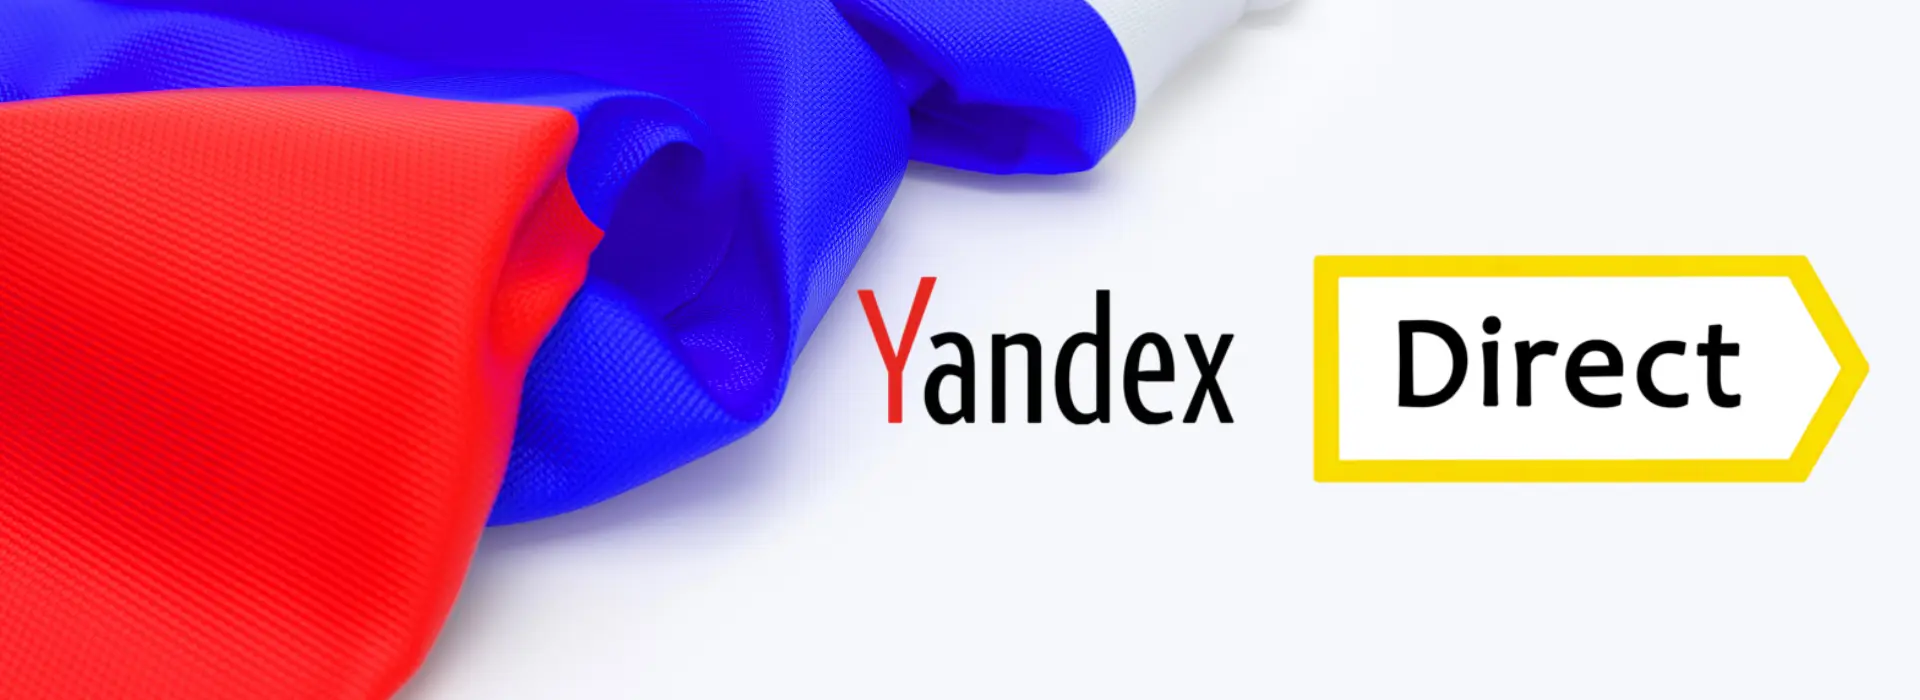 Yandex Direct: Rusya’nın Reklam Devi